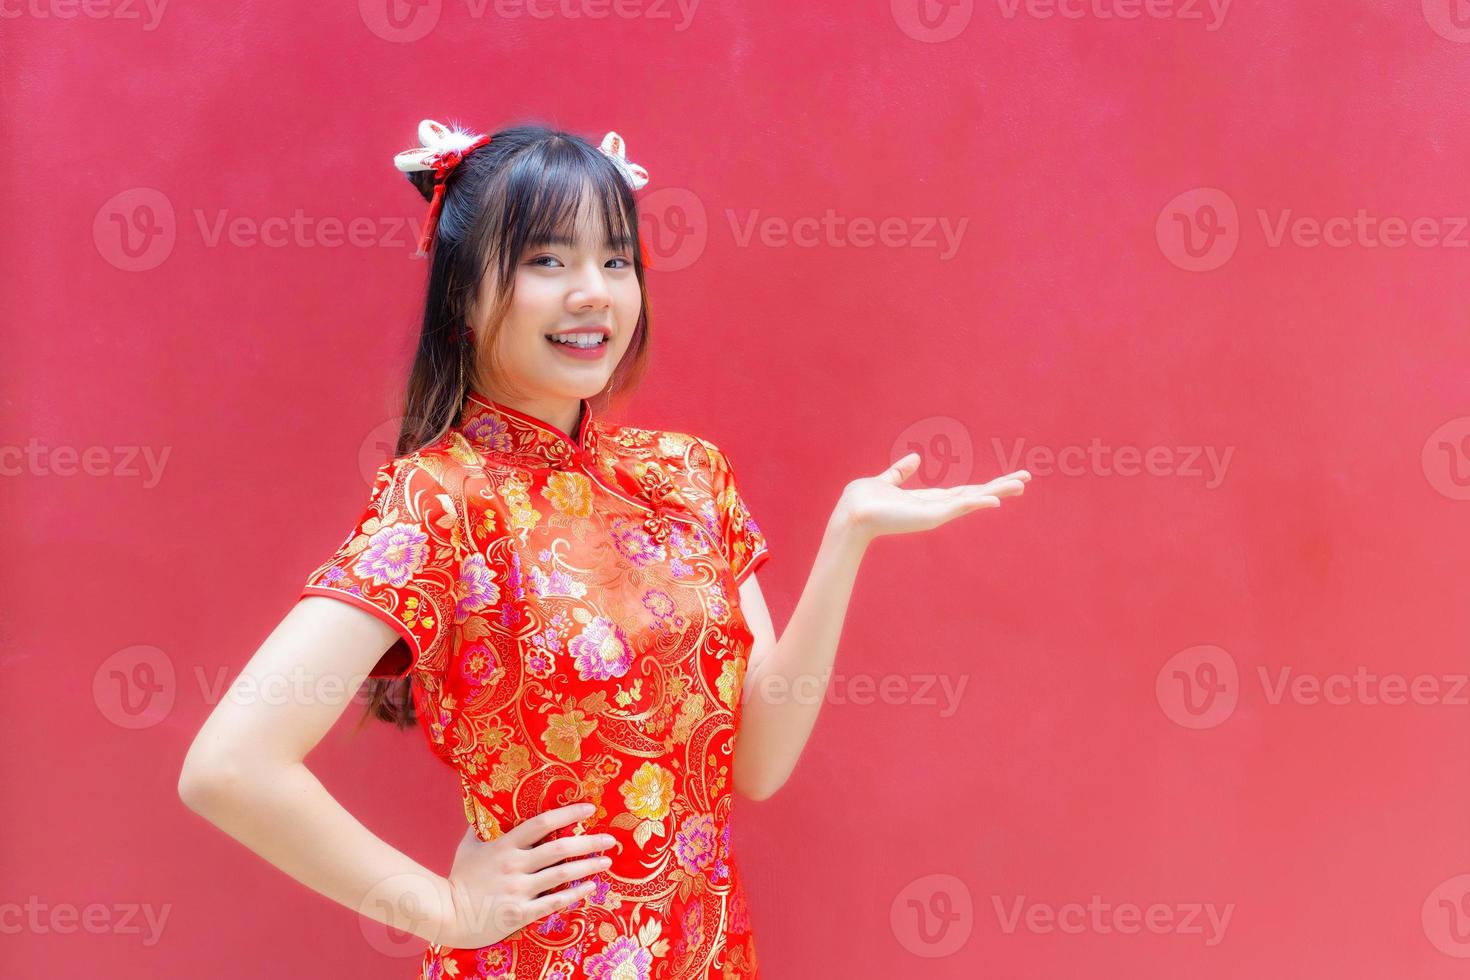 chica asiática con el pelo largo que usa un vestido rojo cheongsam en el tema del año nuevo chino mientras muestra su mano presentar algo un fondo rojo. 19578092